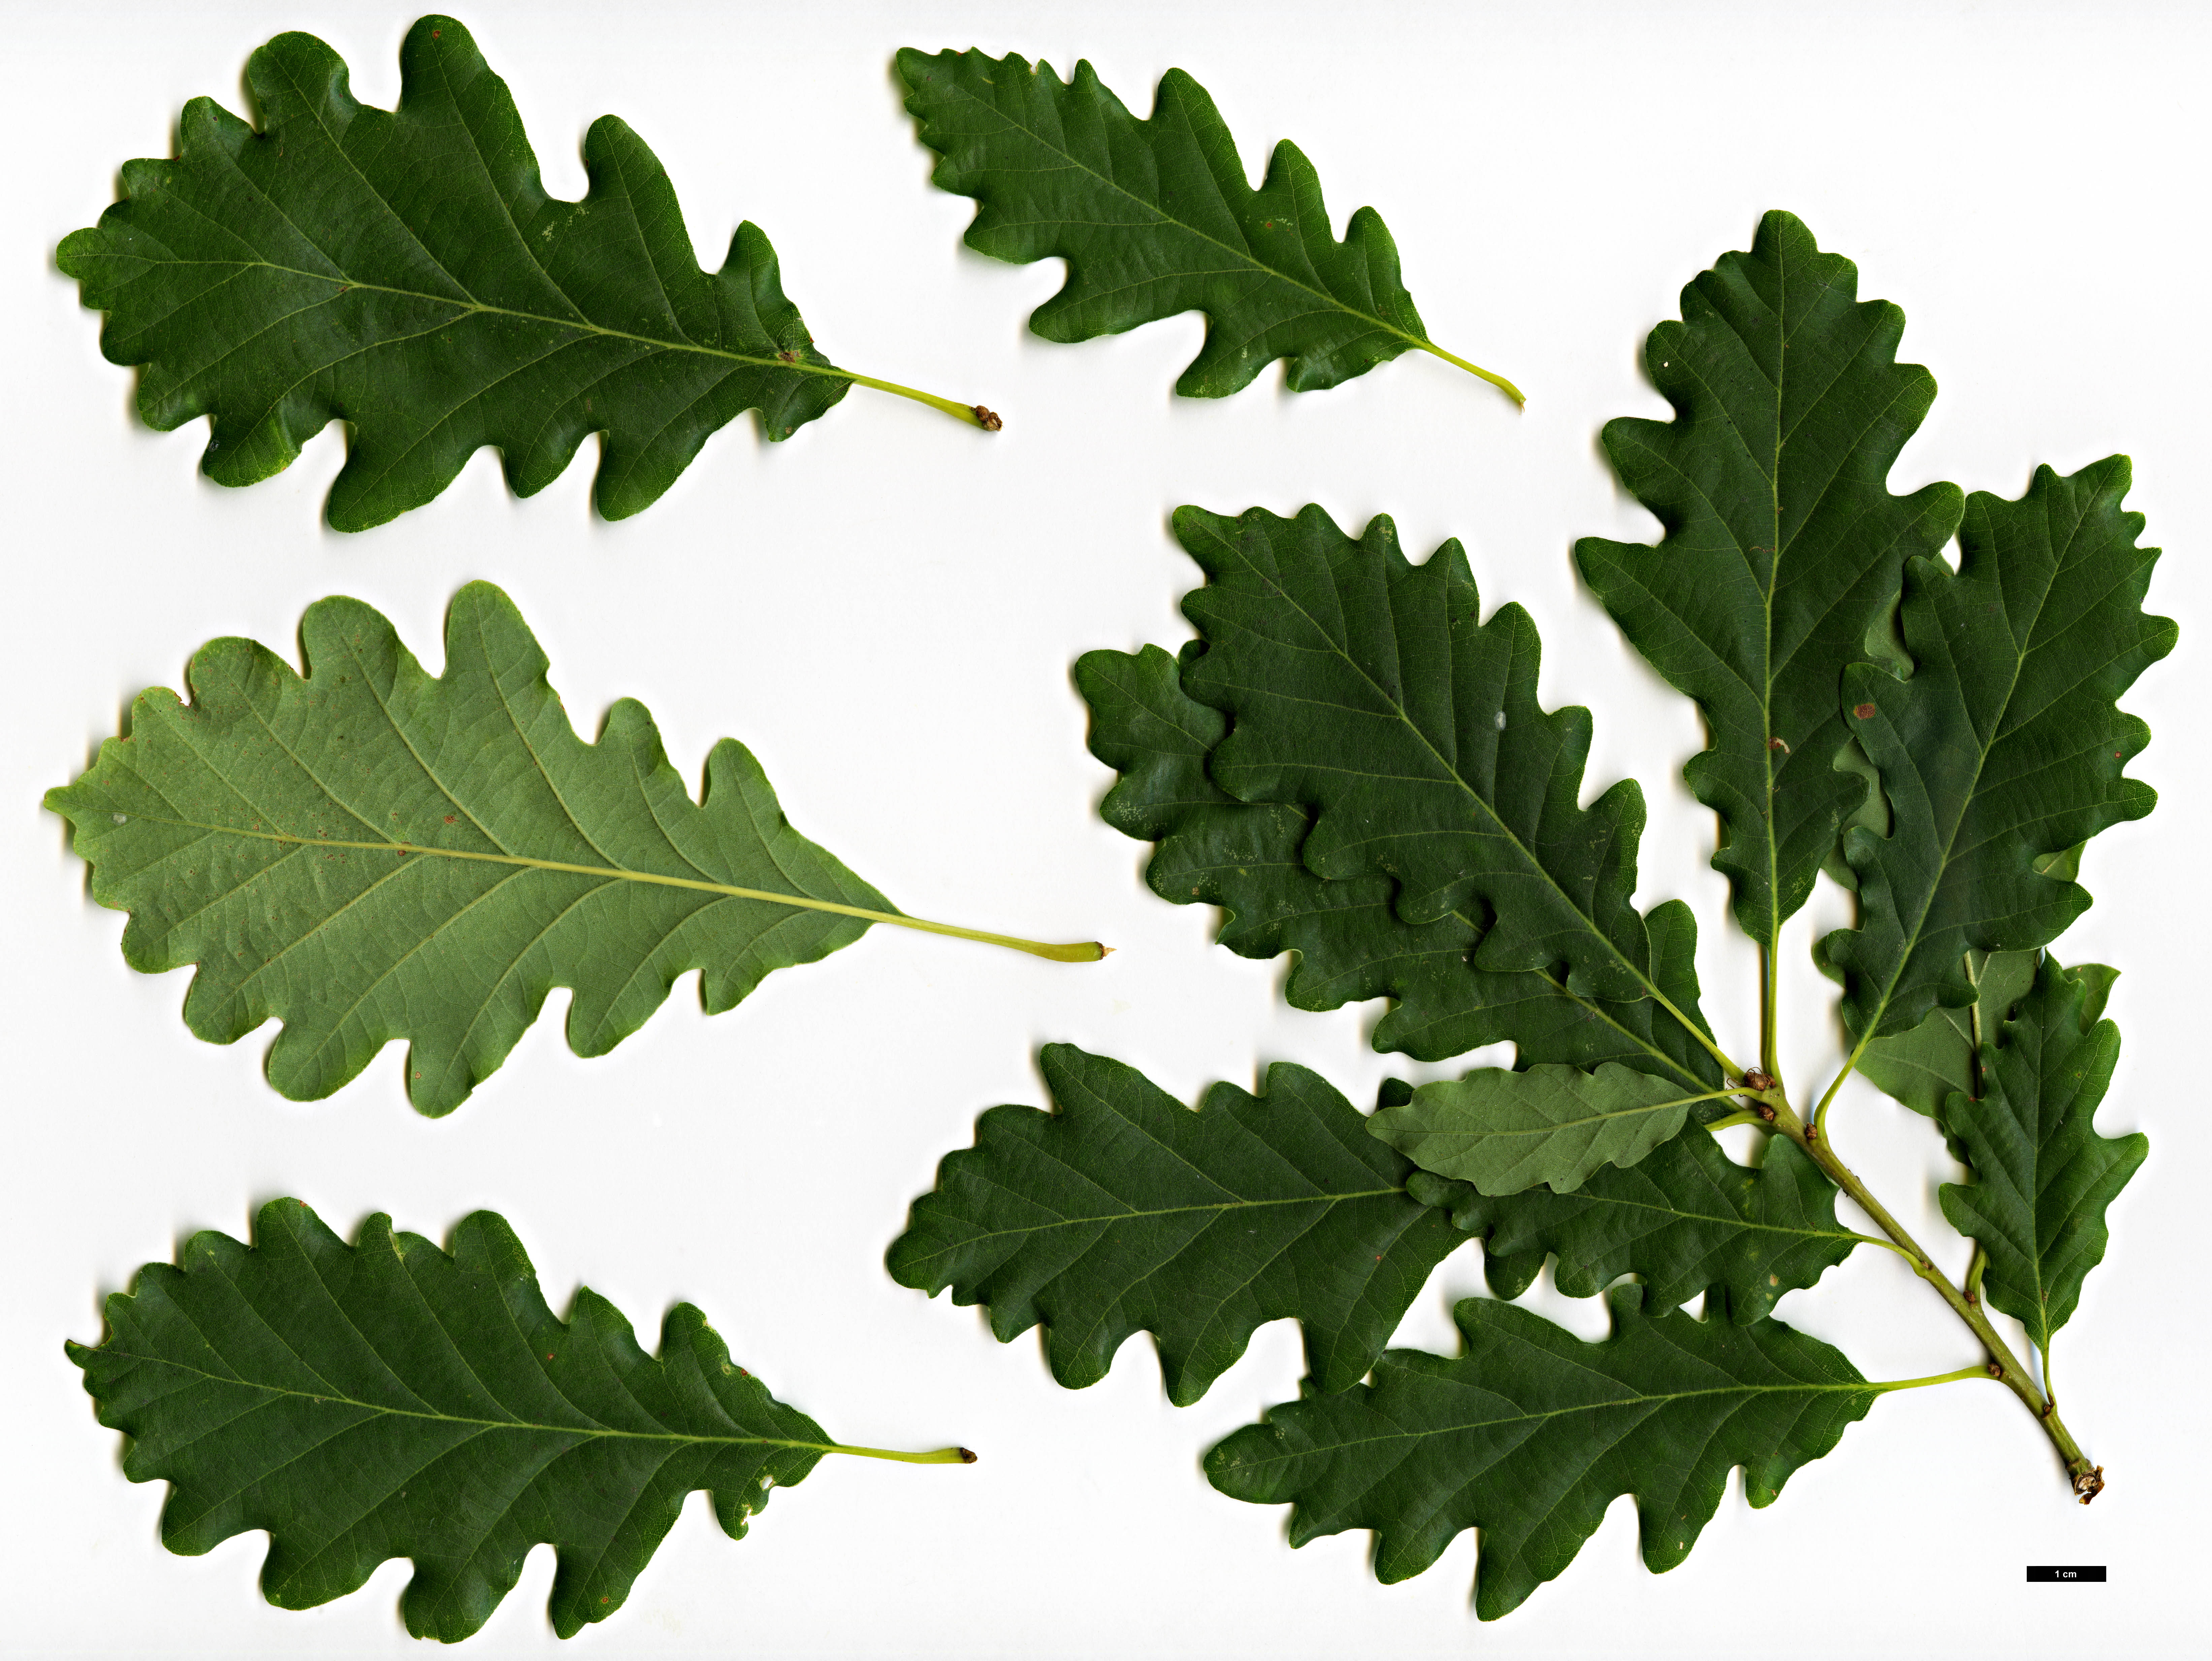 High resolution image: Family: Fagaceae - Genus: Quercus - Taxon: petraea - SpeciesSub: subsp. iberica